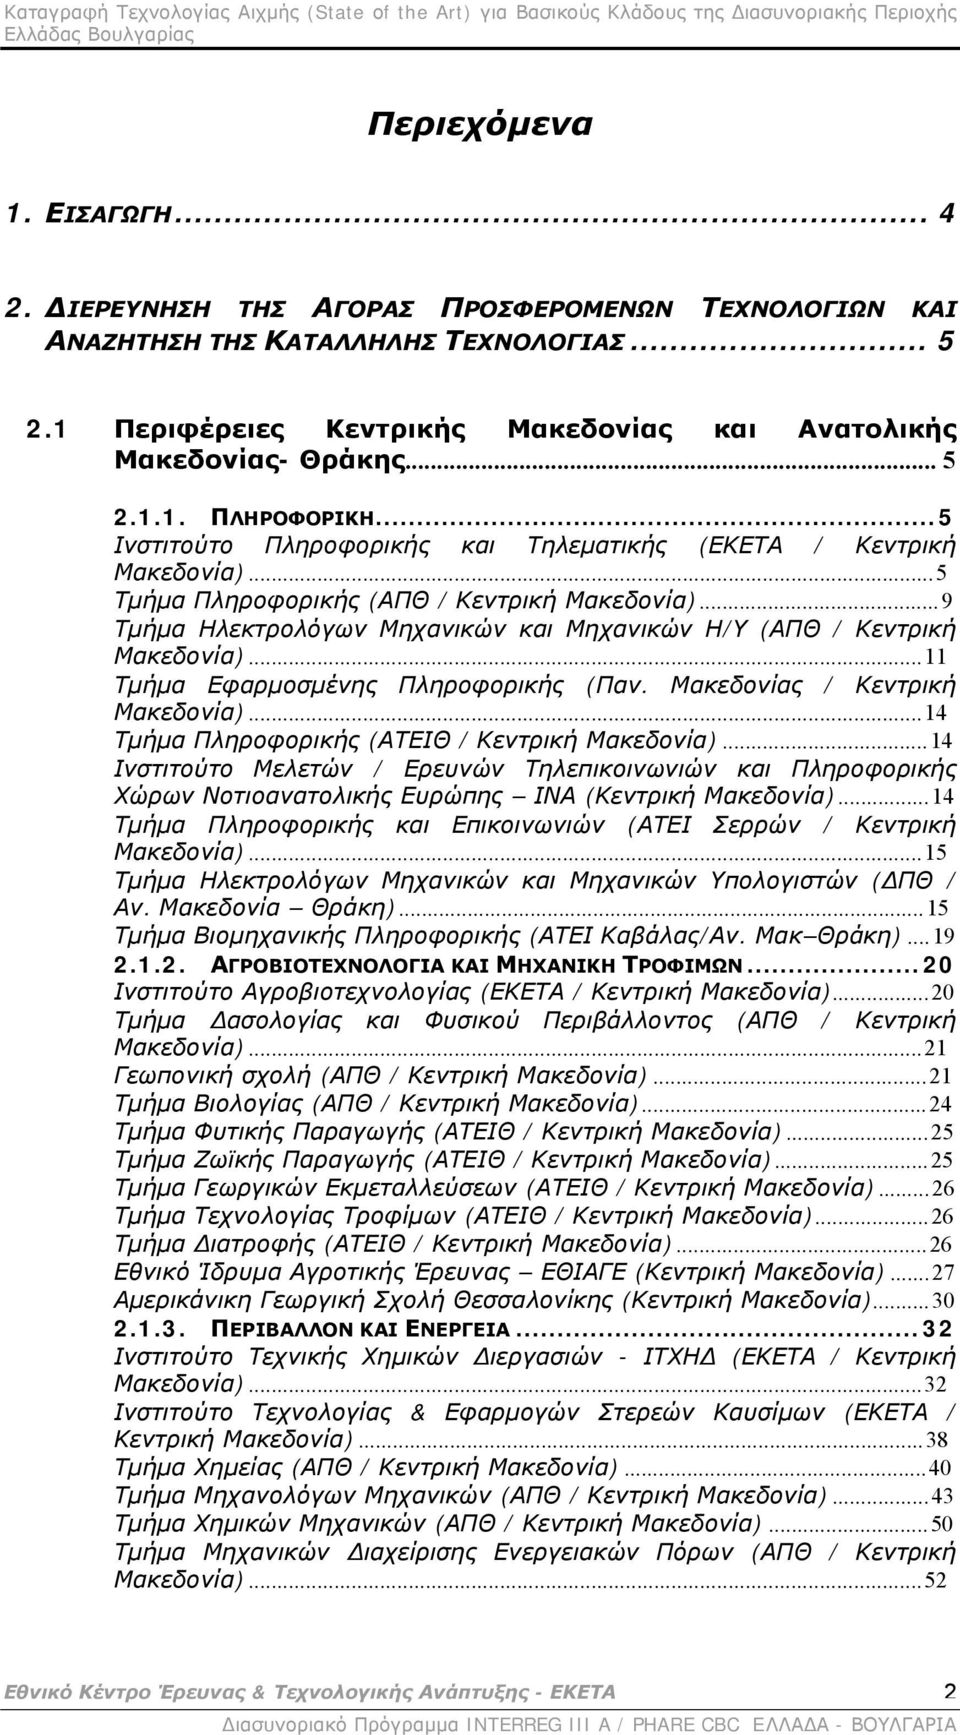 ..9 Τμήμα Ηλεκτρολόγων Μηχανικών και Μηχανικών Η/Υ (ΑΠΘ / Κεντρική Μακεδονία)...11 Τμήμα Εφαρμοσμένης Πληροφορικής (Παν. Μακεδονίας / Κεντρική Μακεδονία).